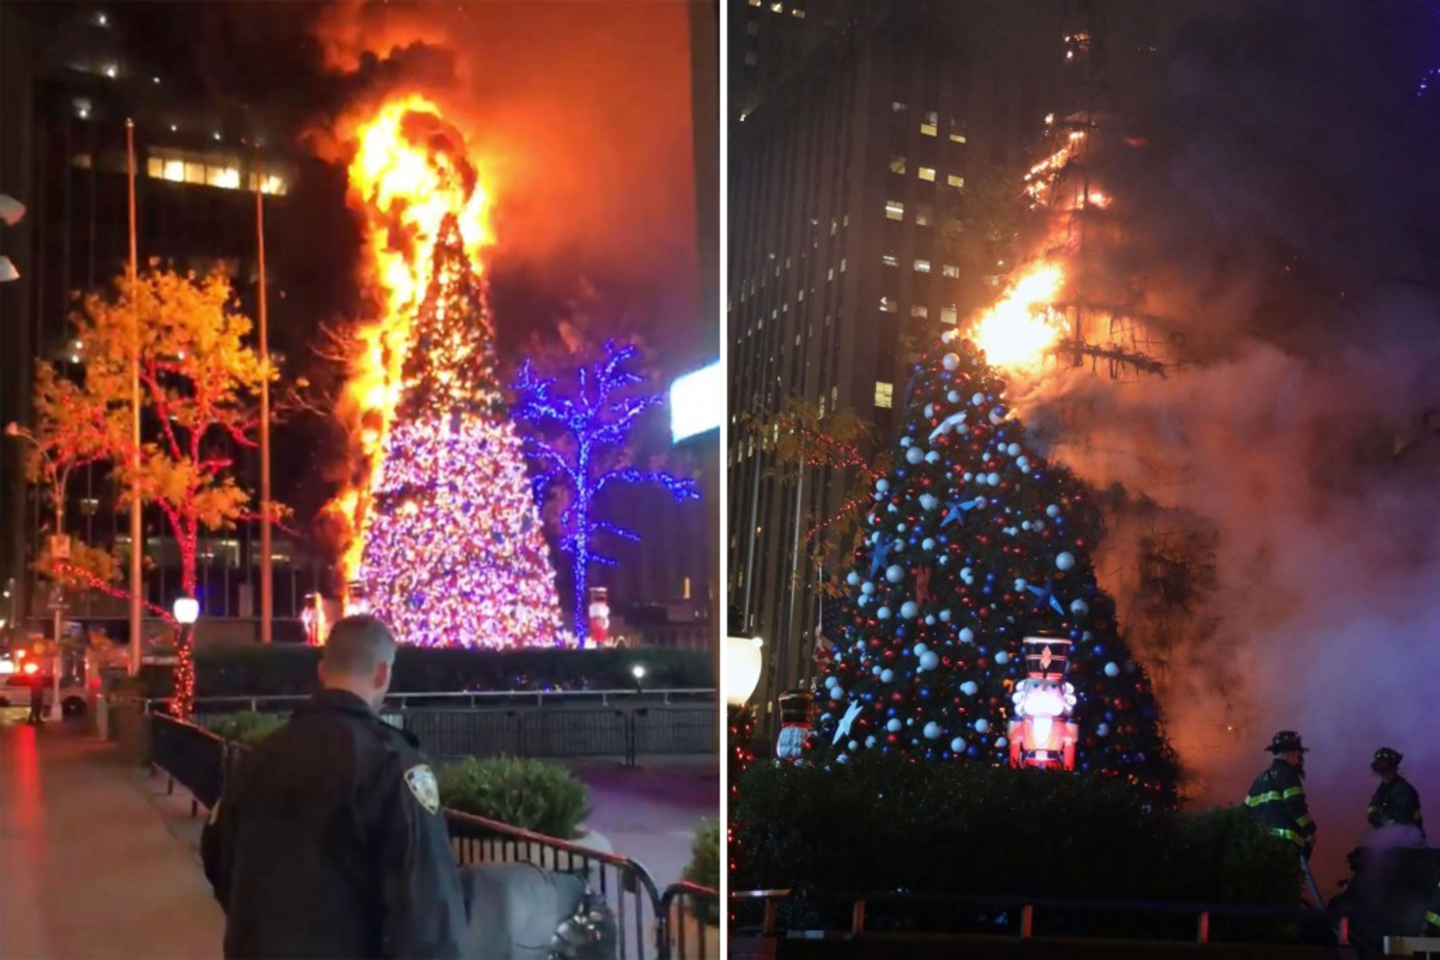  Ankstų trečiadienio rytą Niujorko pirmosios pagalbos tarnybos bandė suvaldyti kalėdinės eglutės gaisrą prie „Fox News“ pastato Manhatano centre.  <br> Twitter nuotr.